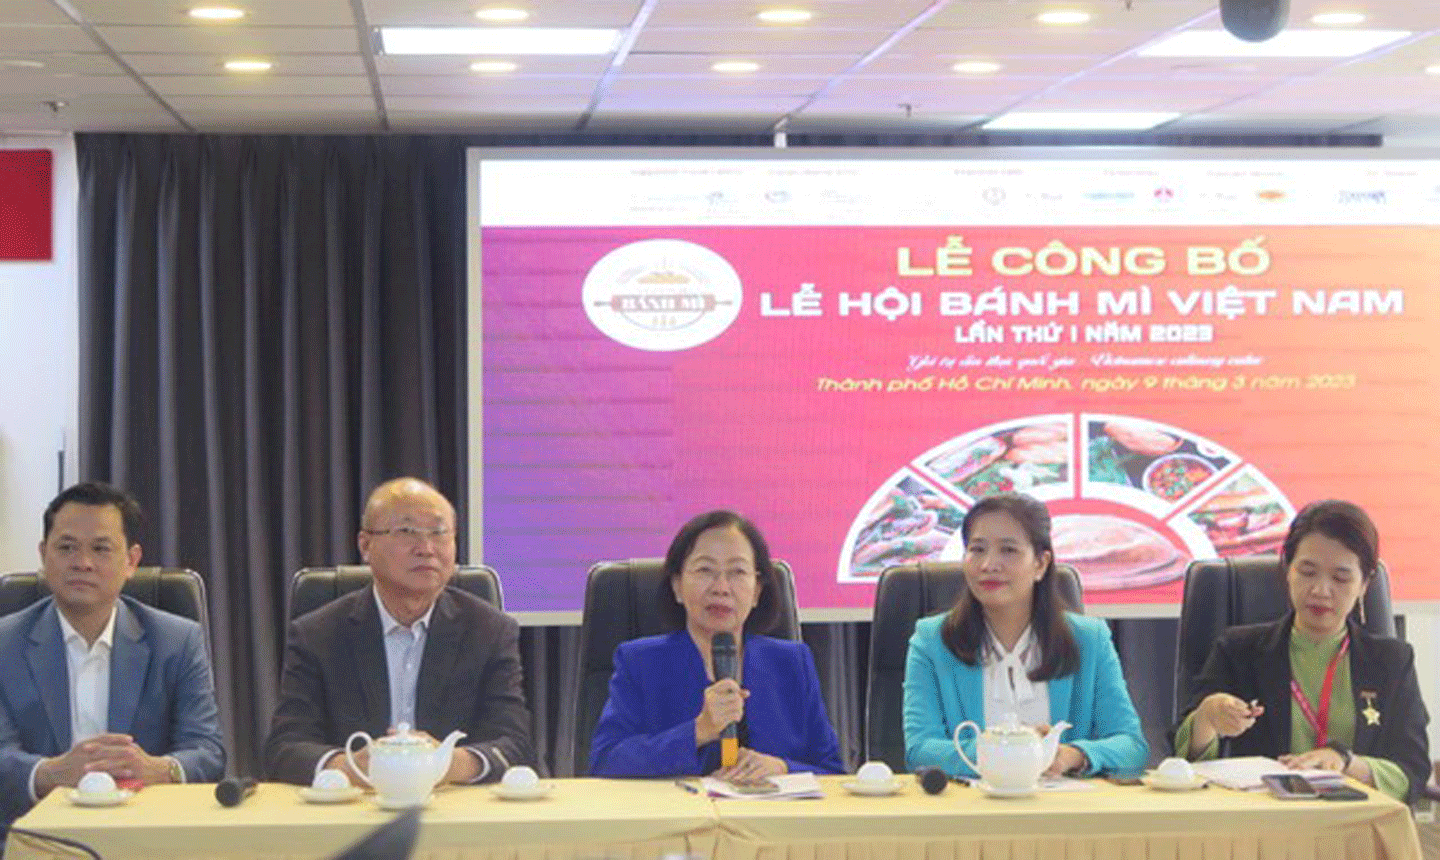 Chủ tịch Hiệp hội Du lịch TPHCM Nguyễn Thị Khánh thông tin về Lễ hội bánh mì Việt Nam lần thứ I - Ảnh: VGP/Vũ Phong